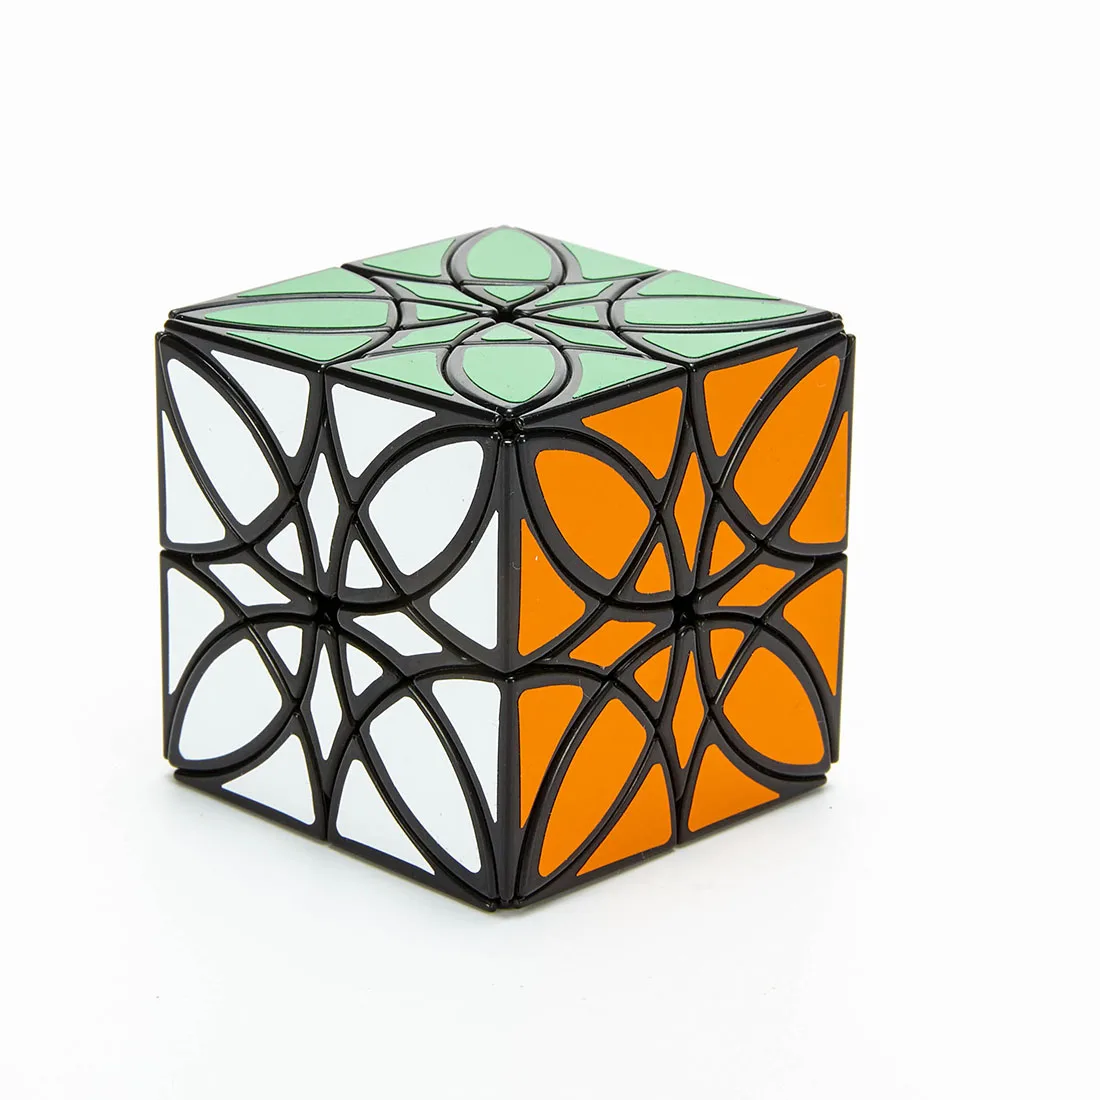 LanLan Butterflower Magic Cube Podivný Tvar Magico Kocka Vzdelávacie Hračky Puzzle Hra Kocky Pre Deti, Dospelých, Malé Darčeky - Black